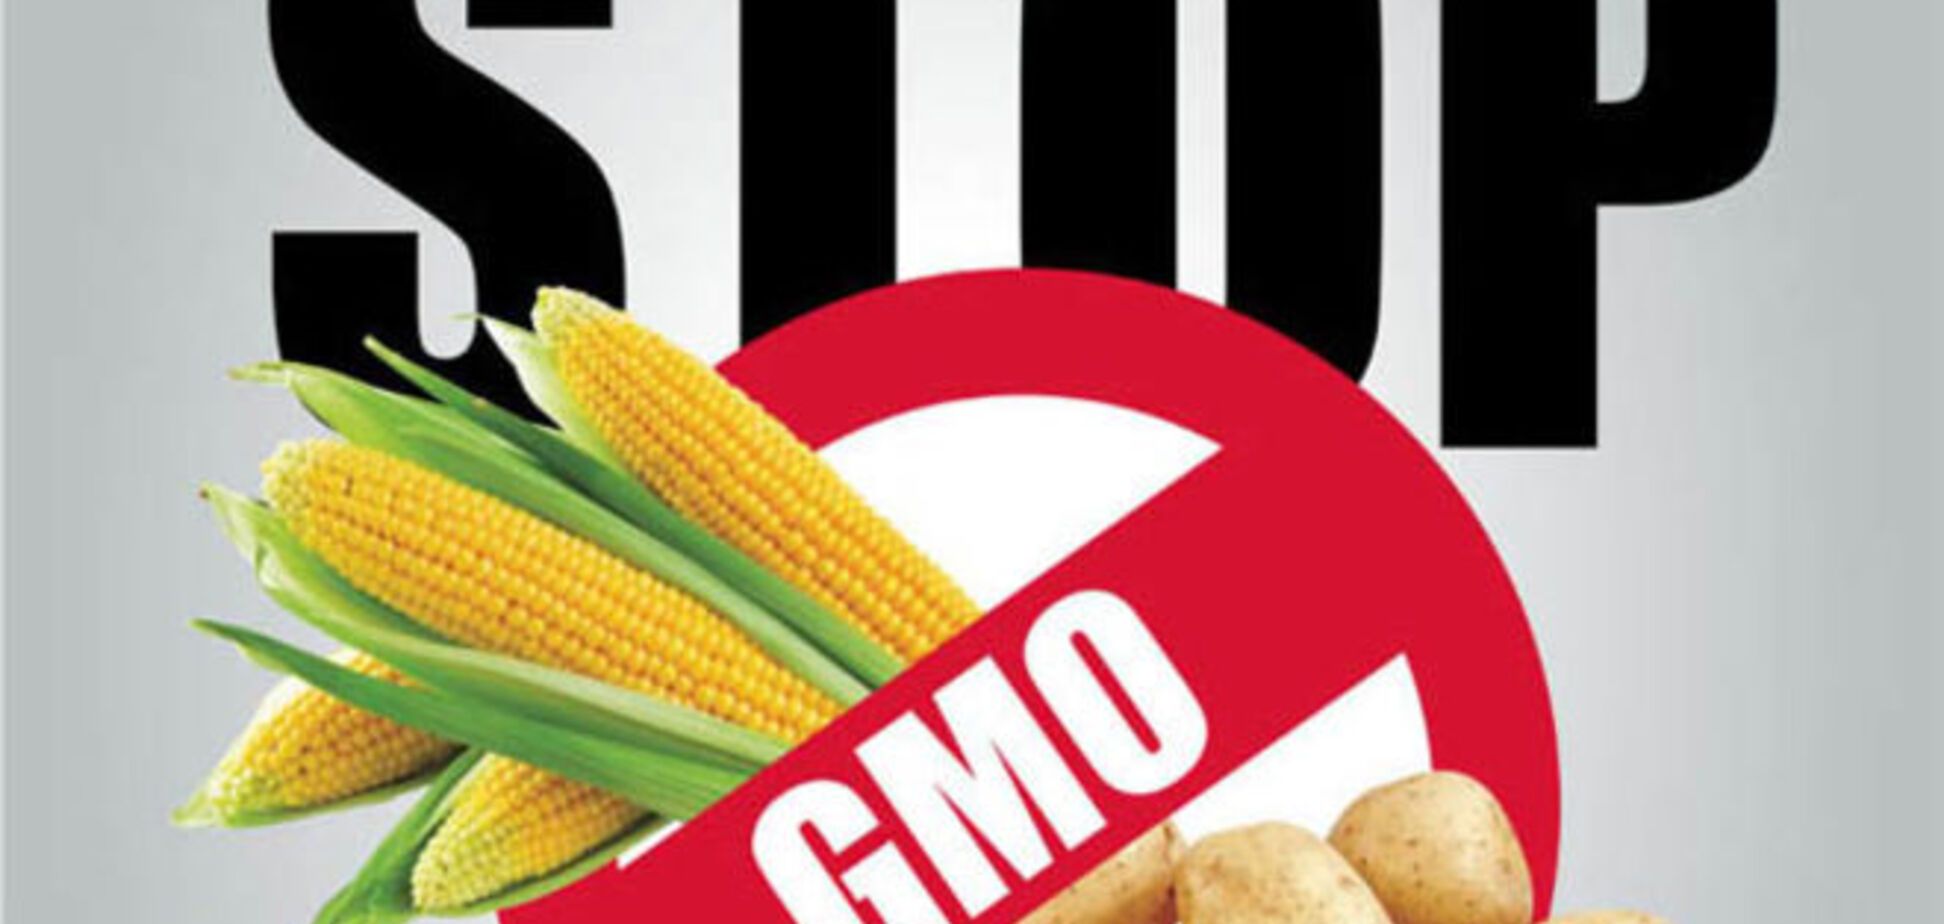 Министр аграрной политики объявил войну ГМО